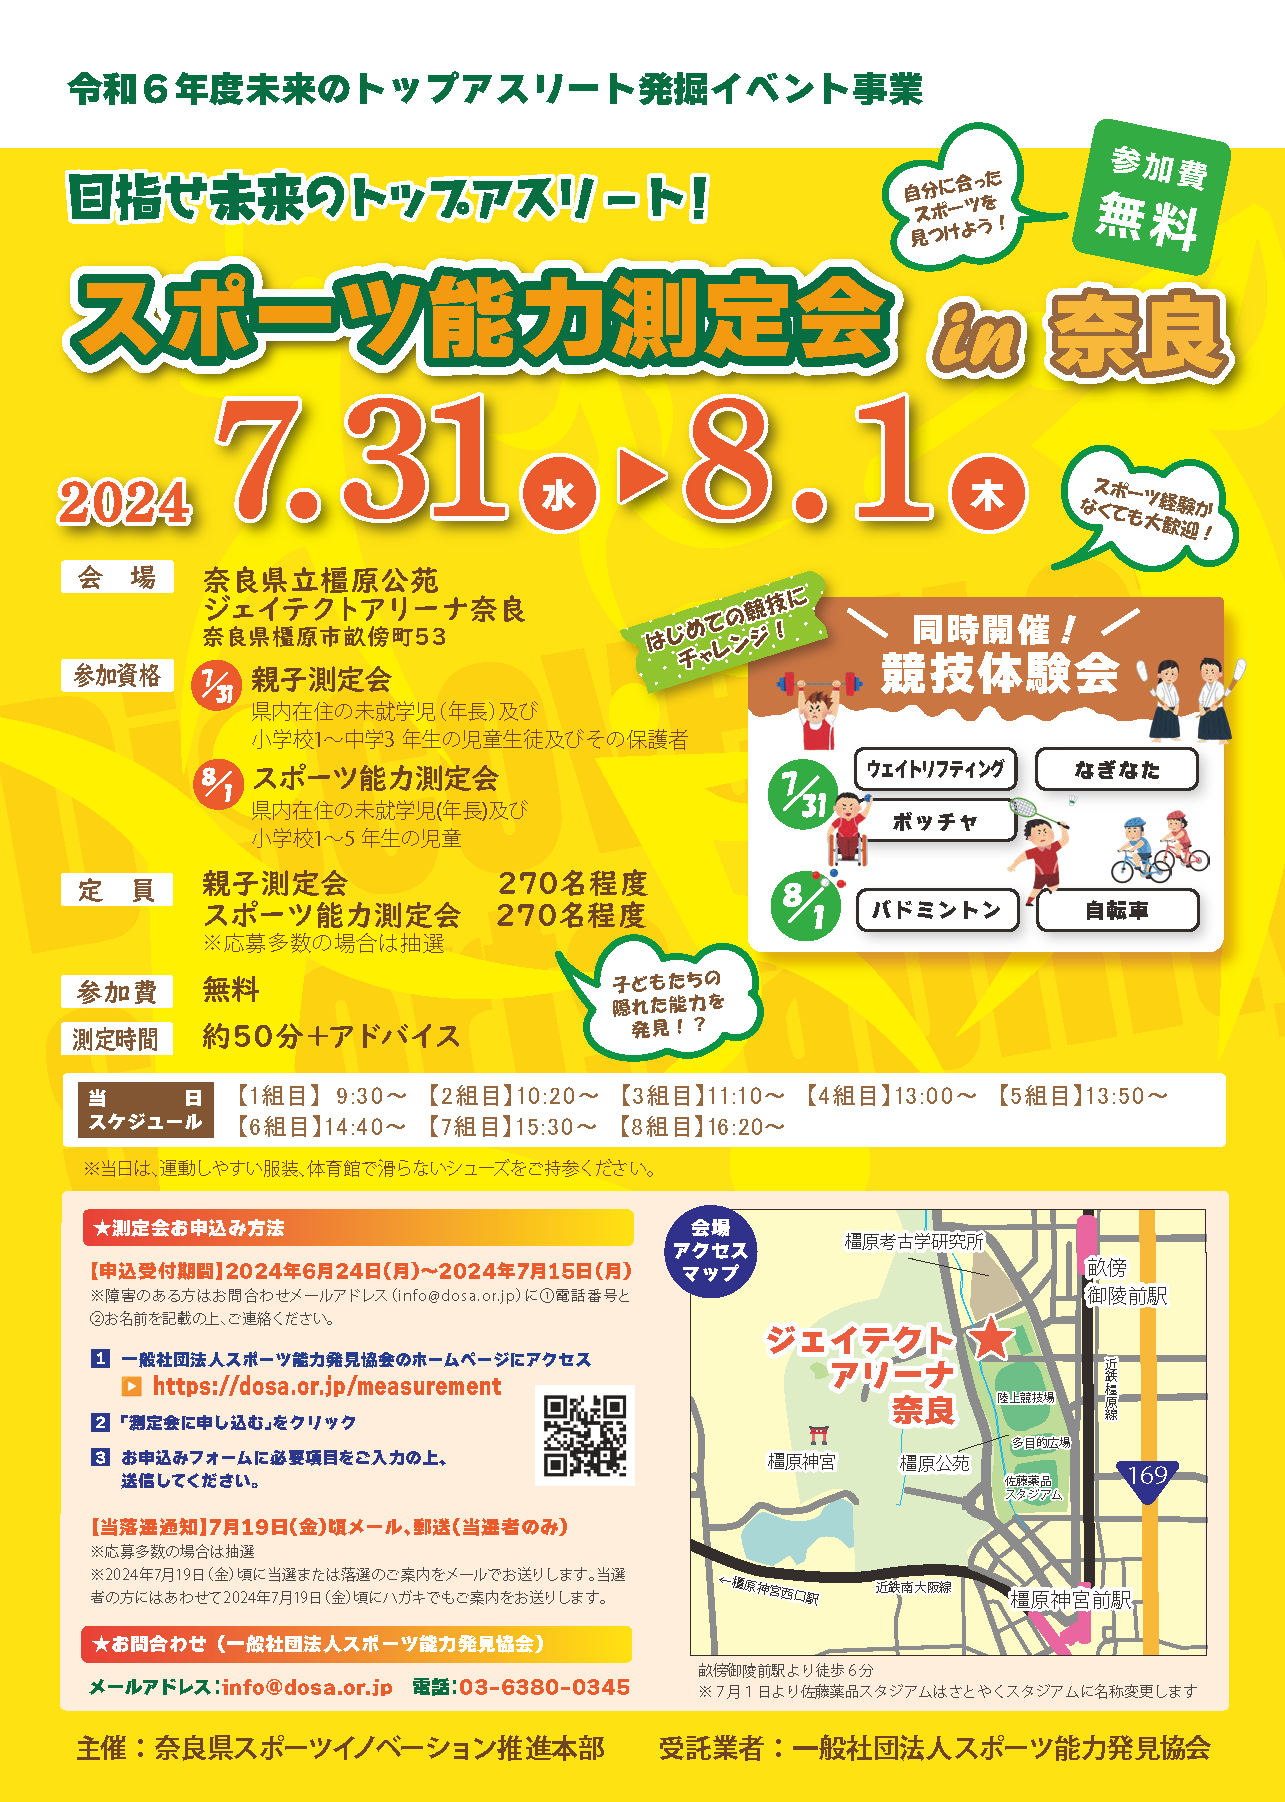 2024/7/31,8/1 スポーツ能力測定会 in 奈良を開催します。